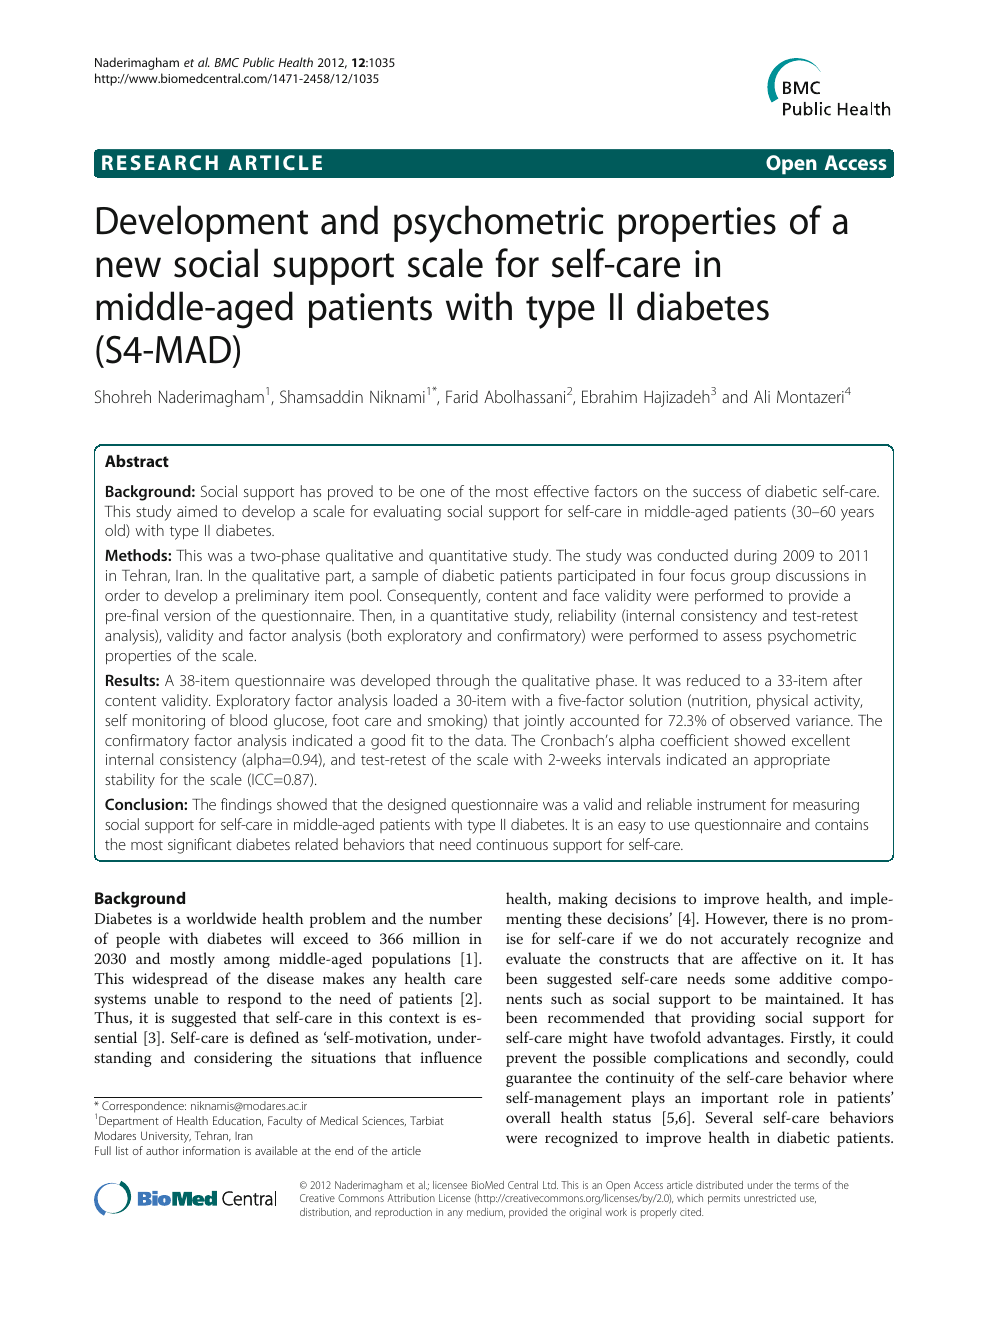 diabetes care profile (dcp))